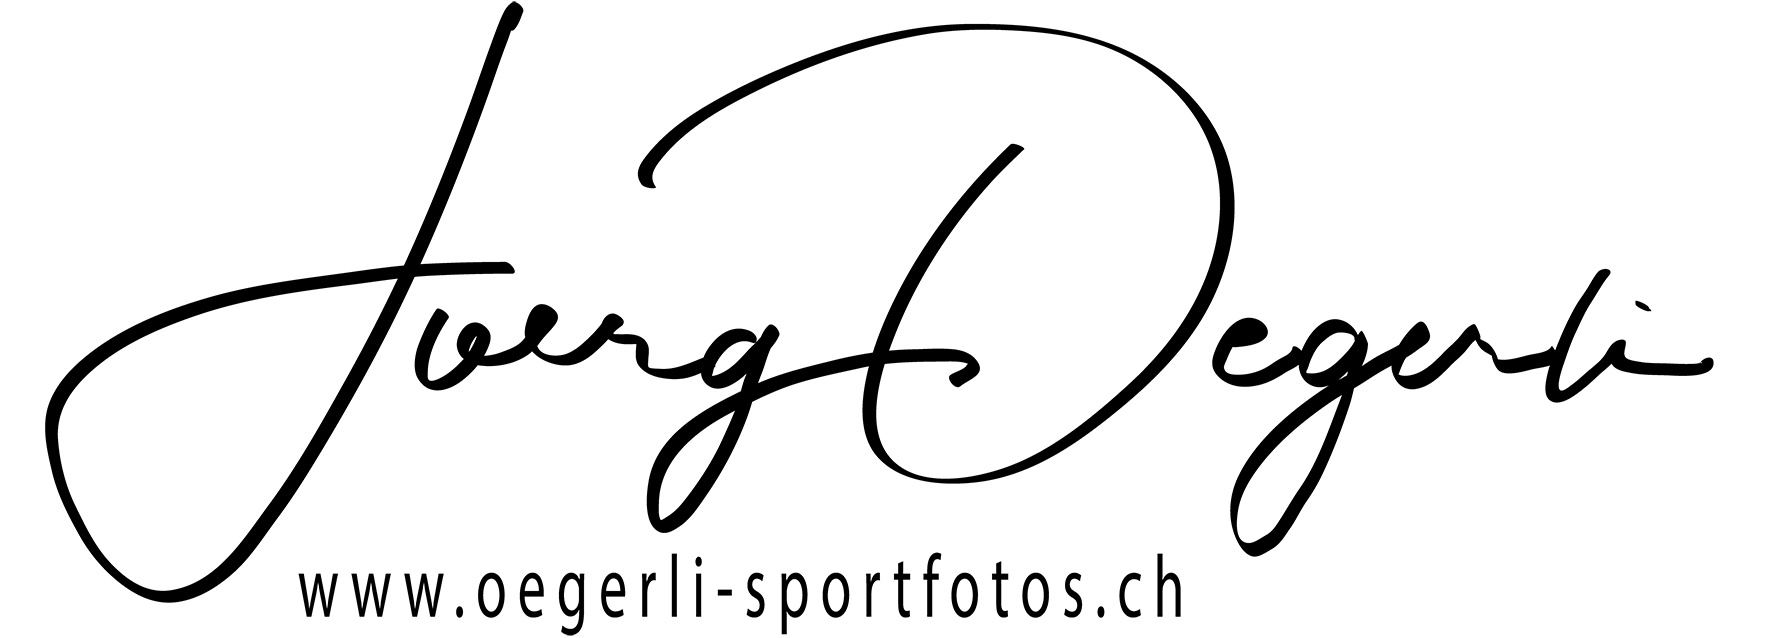 Joerg Oegerli Sportfotos